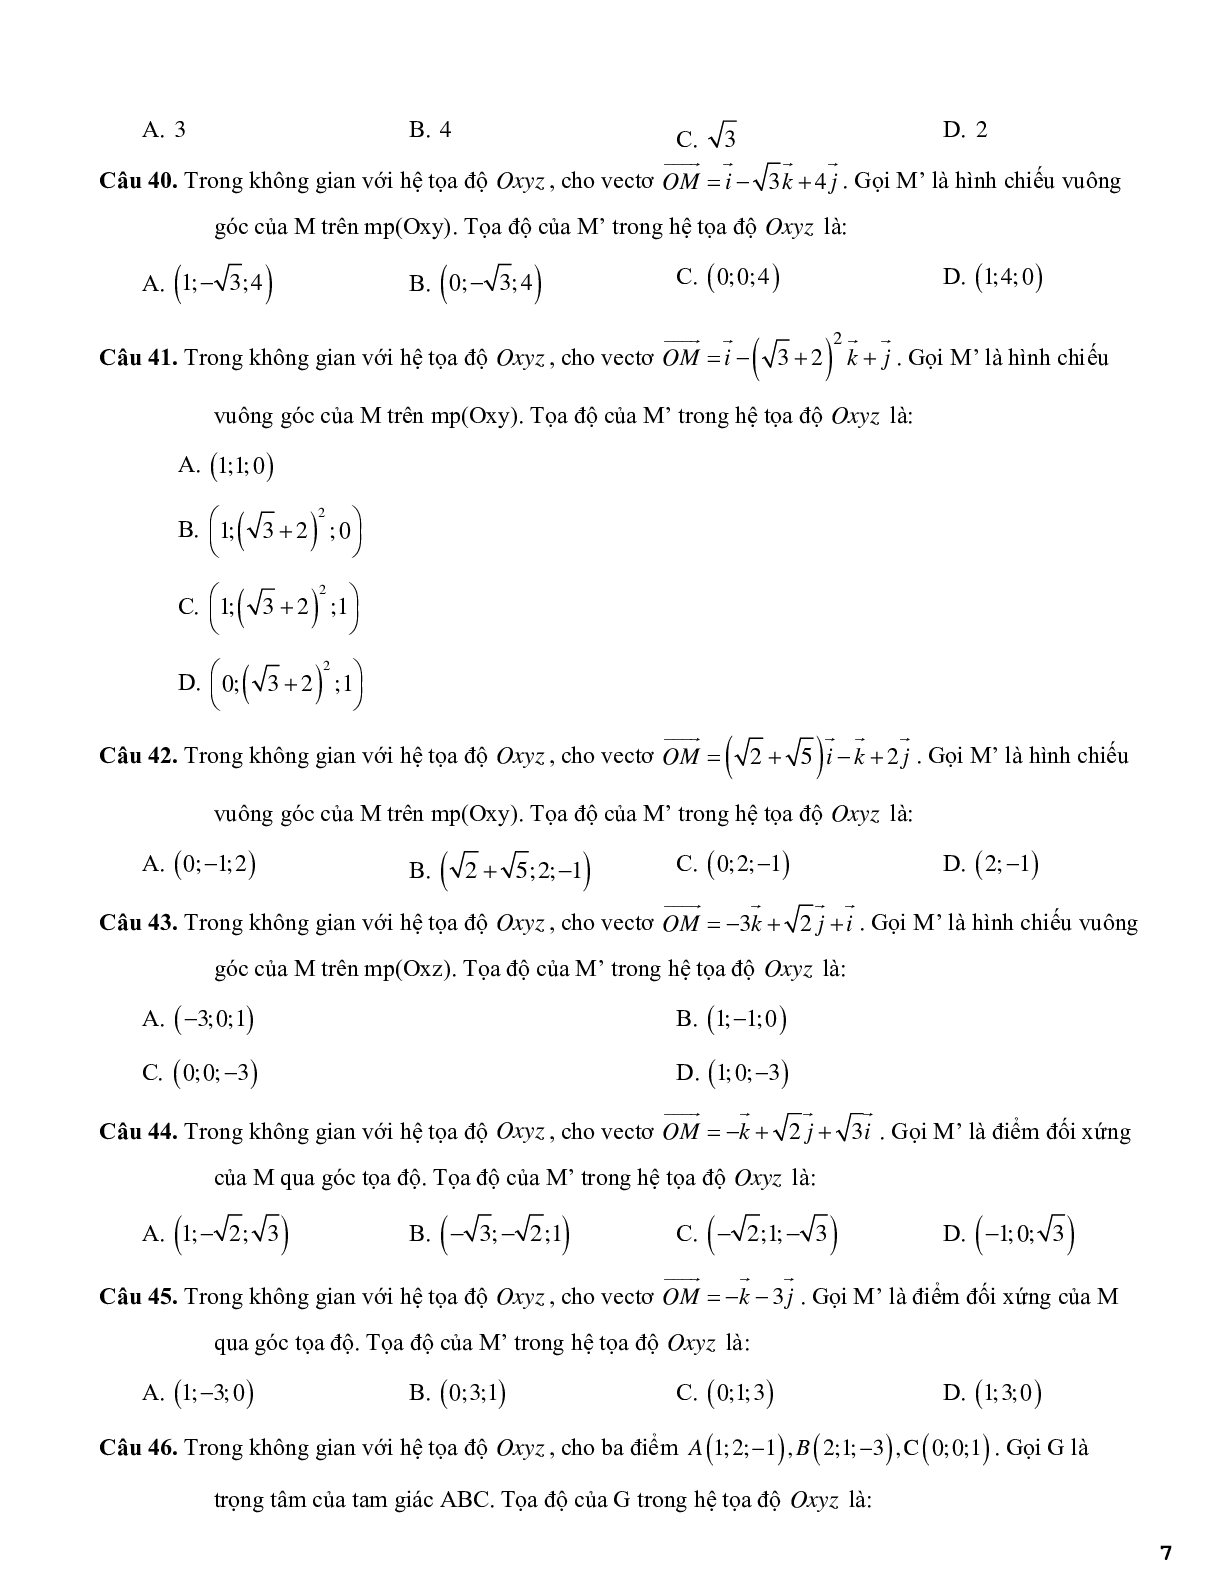 420 câu trắc nghiệm phương pháp tọa độ trong không gian - có đáp án (trang 7)